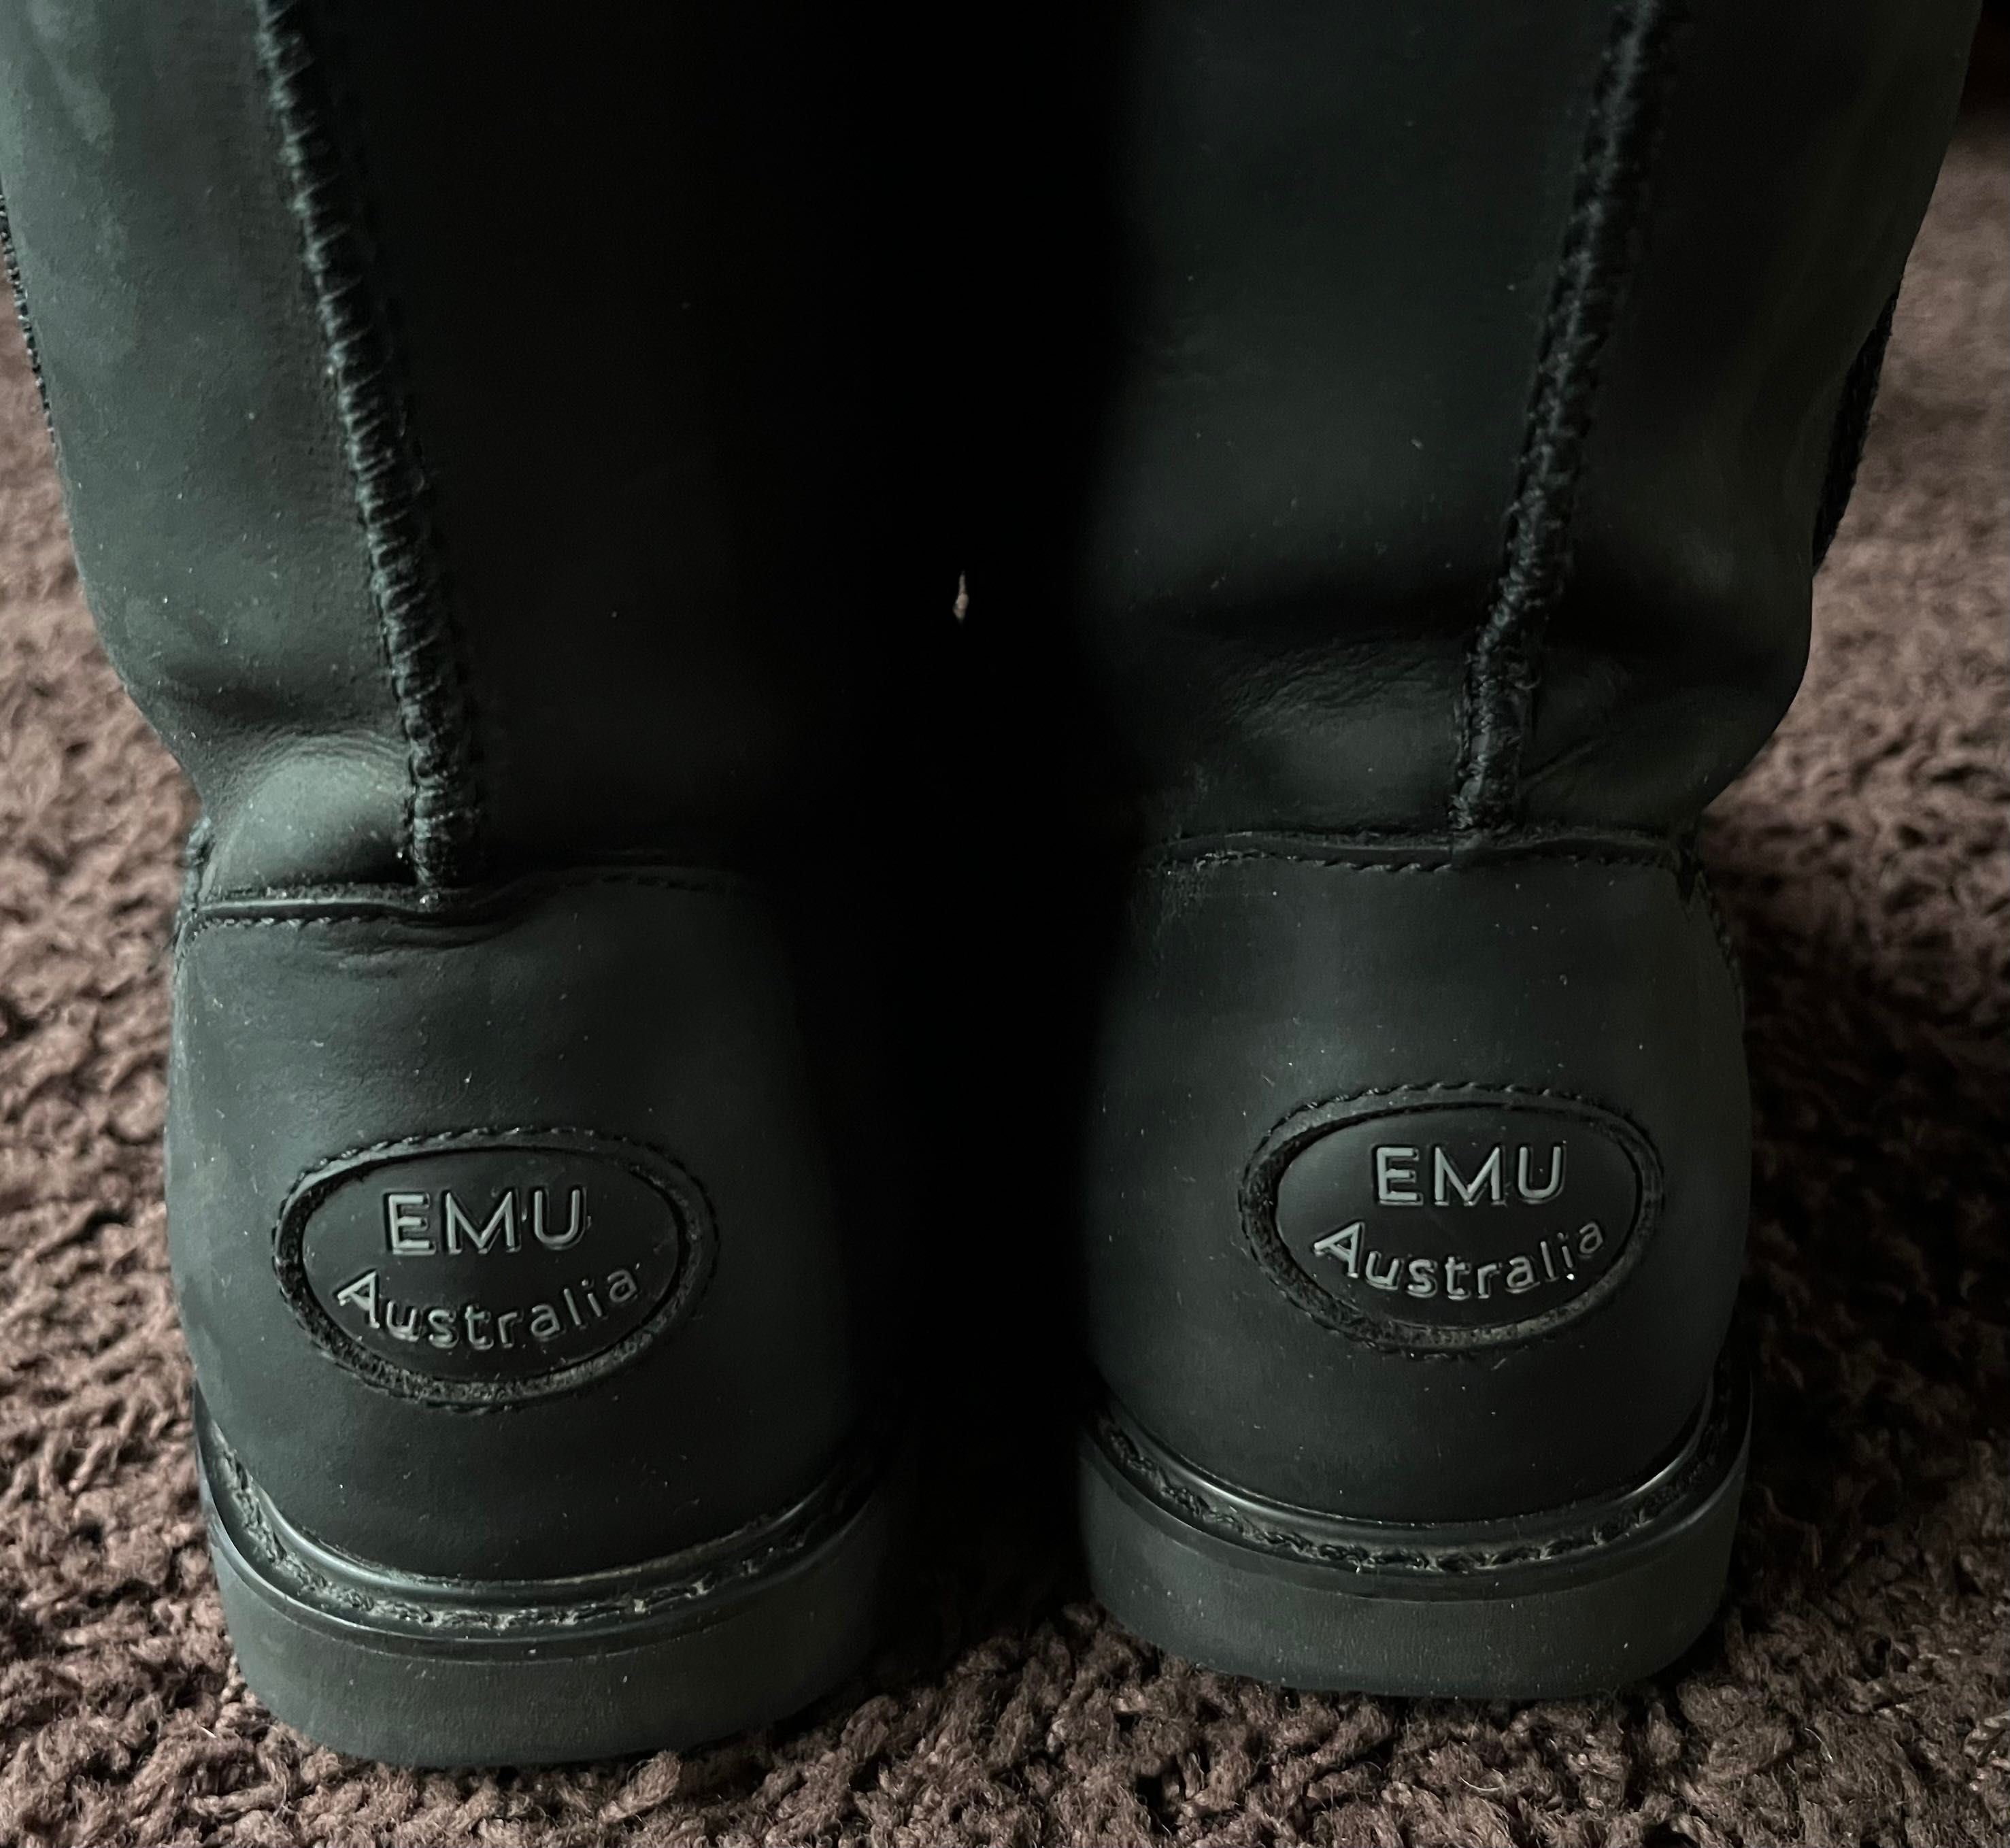 Emu paterson leather skórzane botki kozaki śniegowce 38 39 bdb